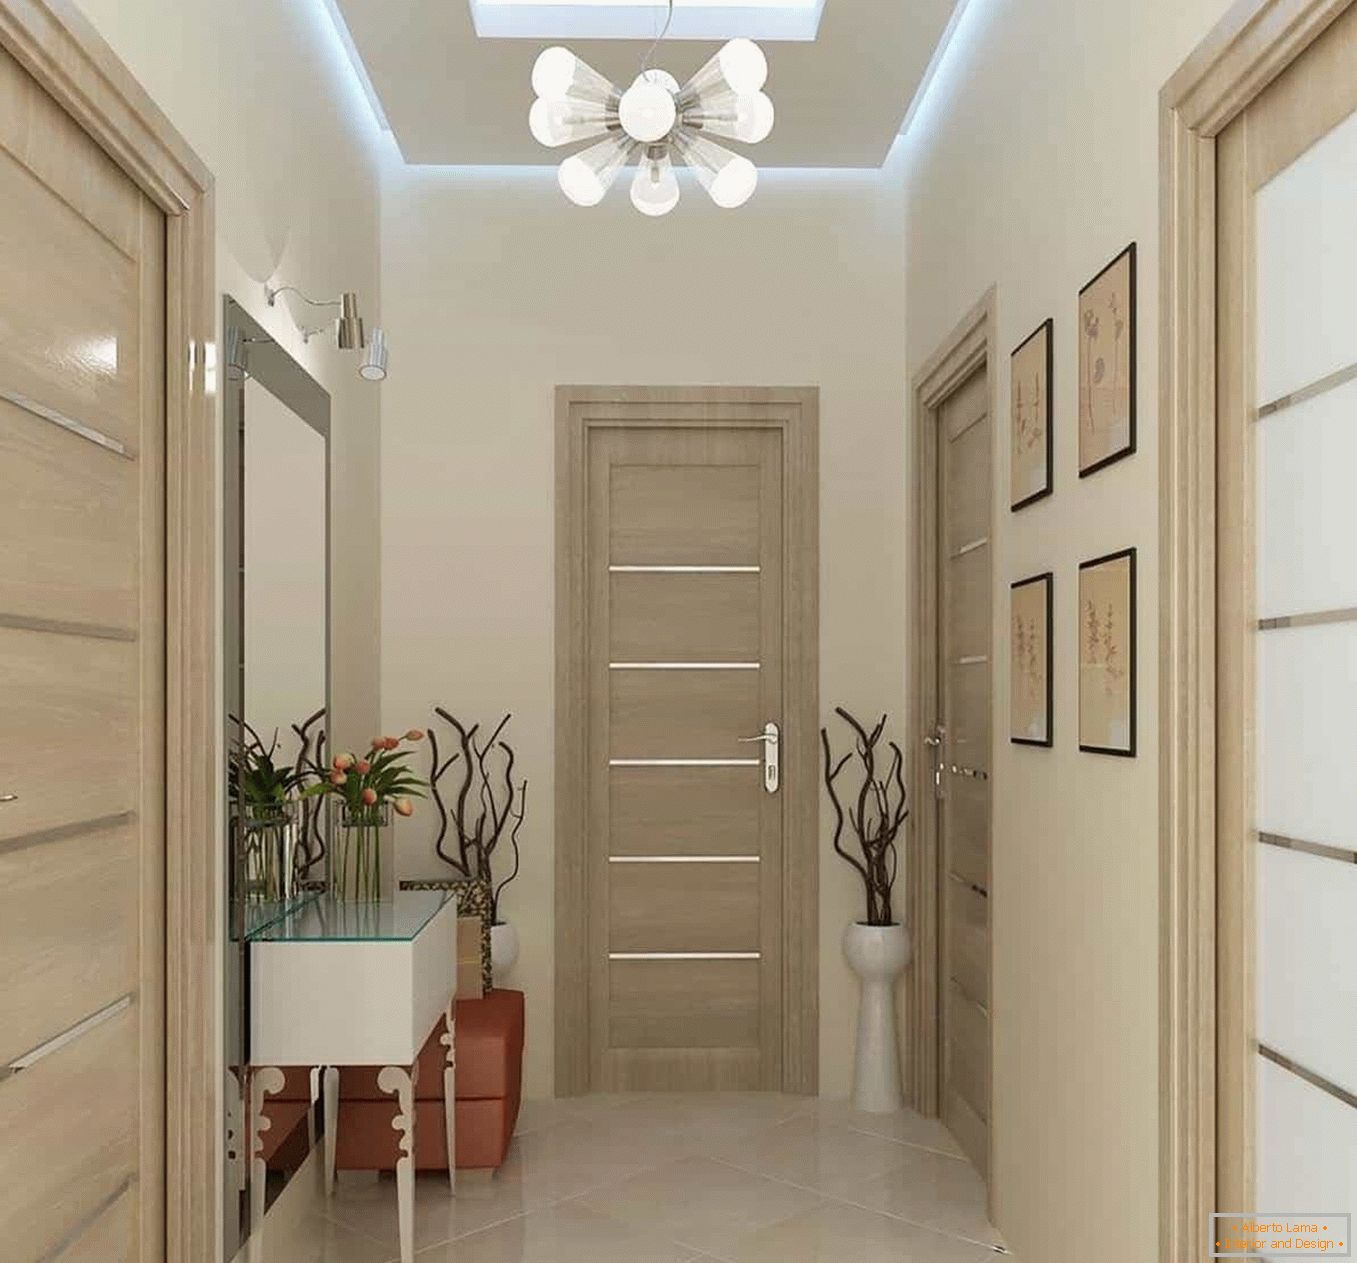 Corridoio luminoso, una combinazione di colori di pareti e porte